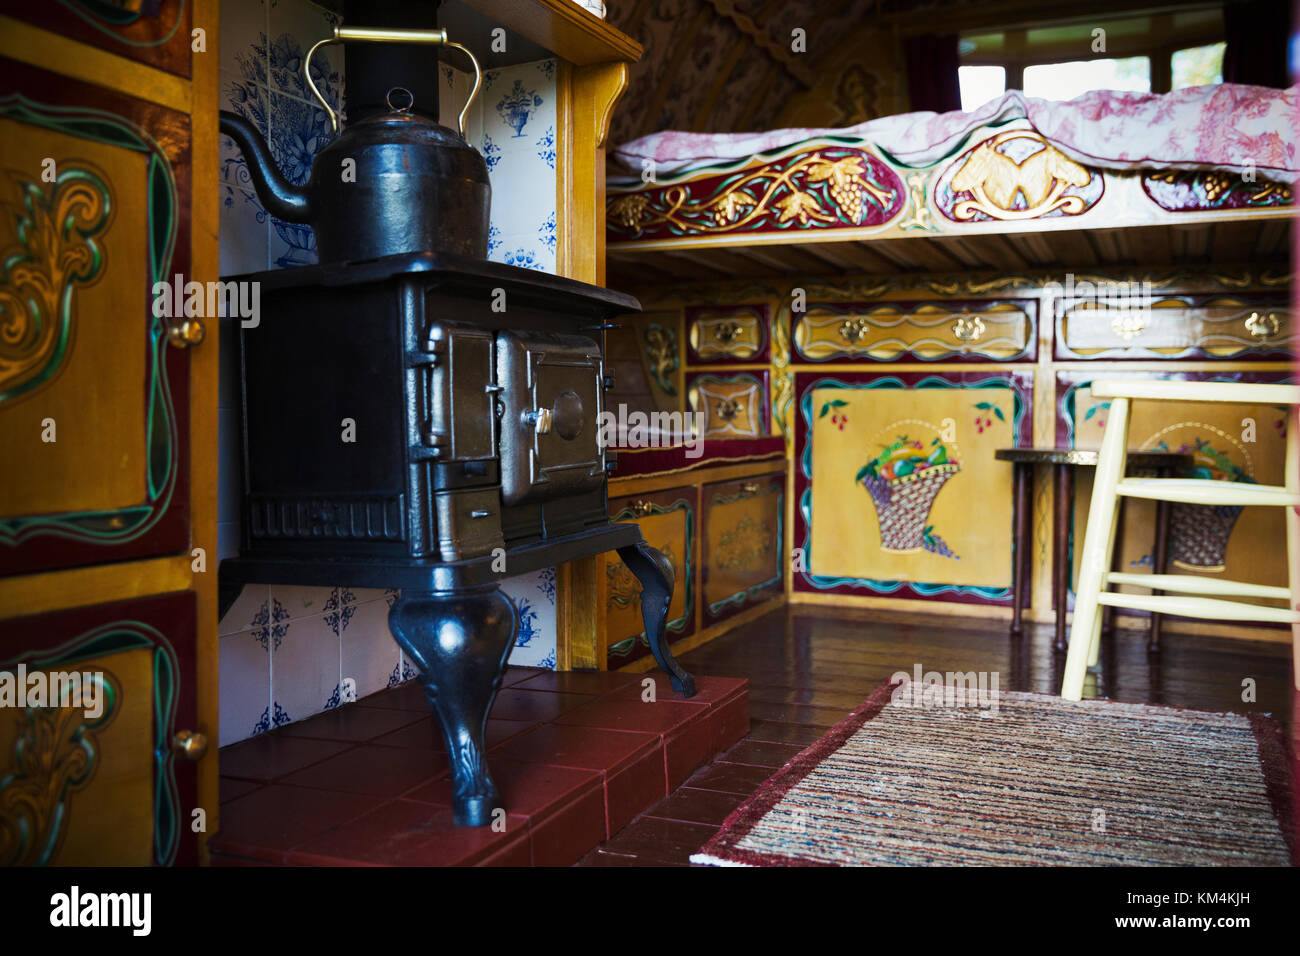 Un poêle en fonte avec grand métal électrique, une cheminée et placards de rangement et lit soulevé, l'intérieur d'une roulotte, Banque D'Images